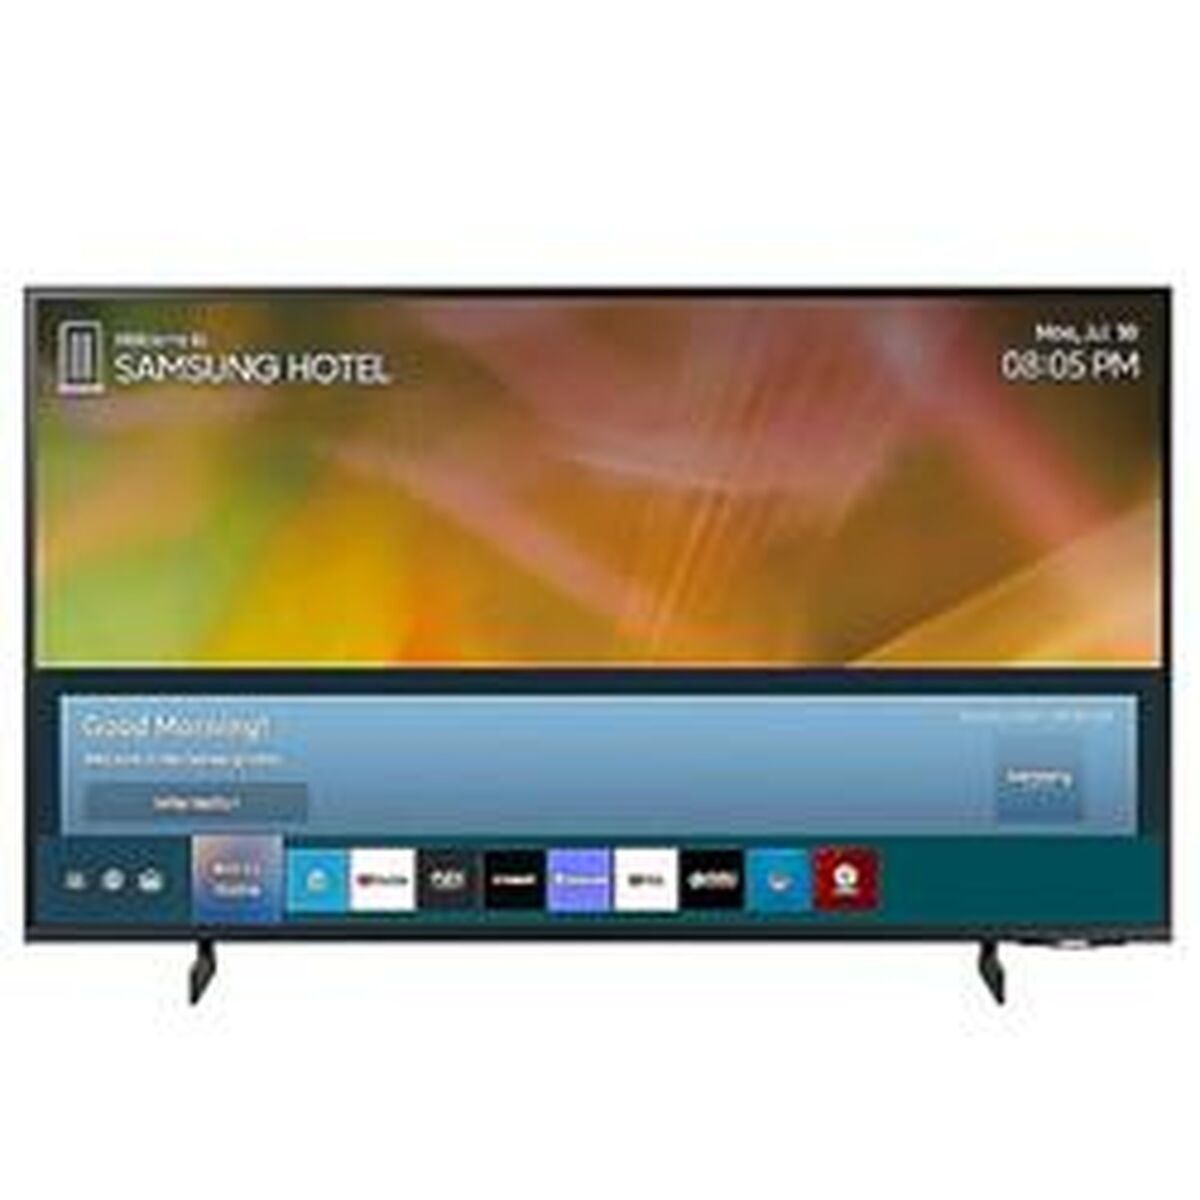 TV intelligente Samsung HG50AU800EEXEN